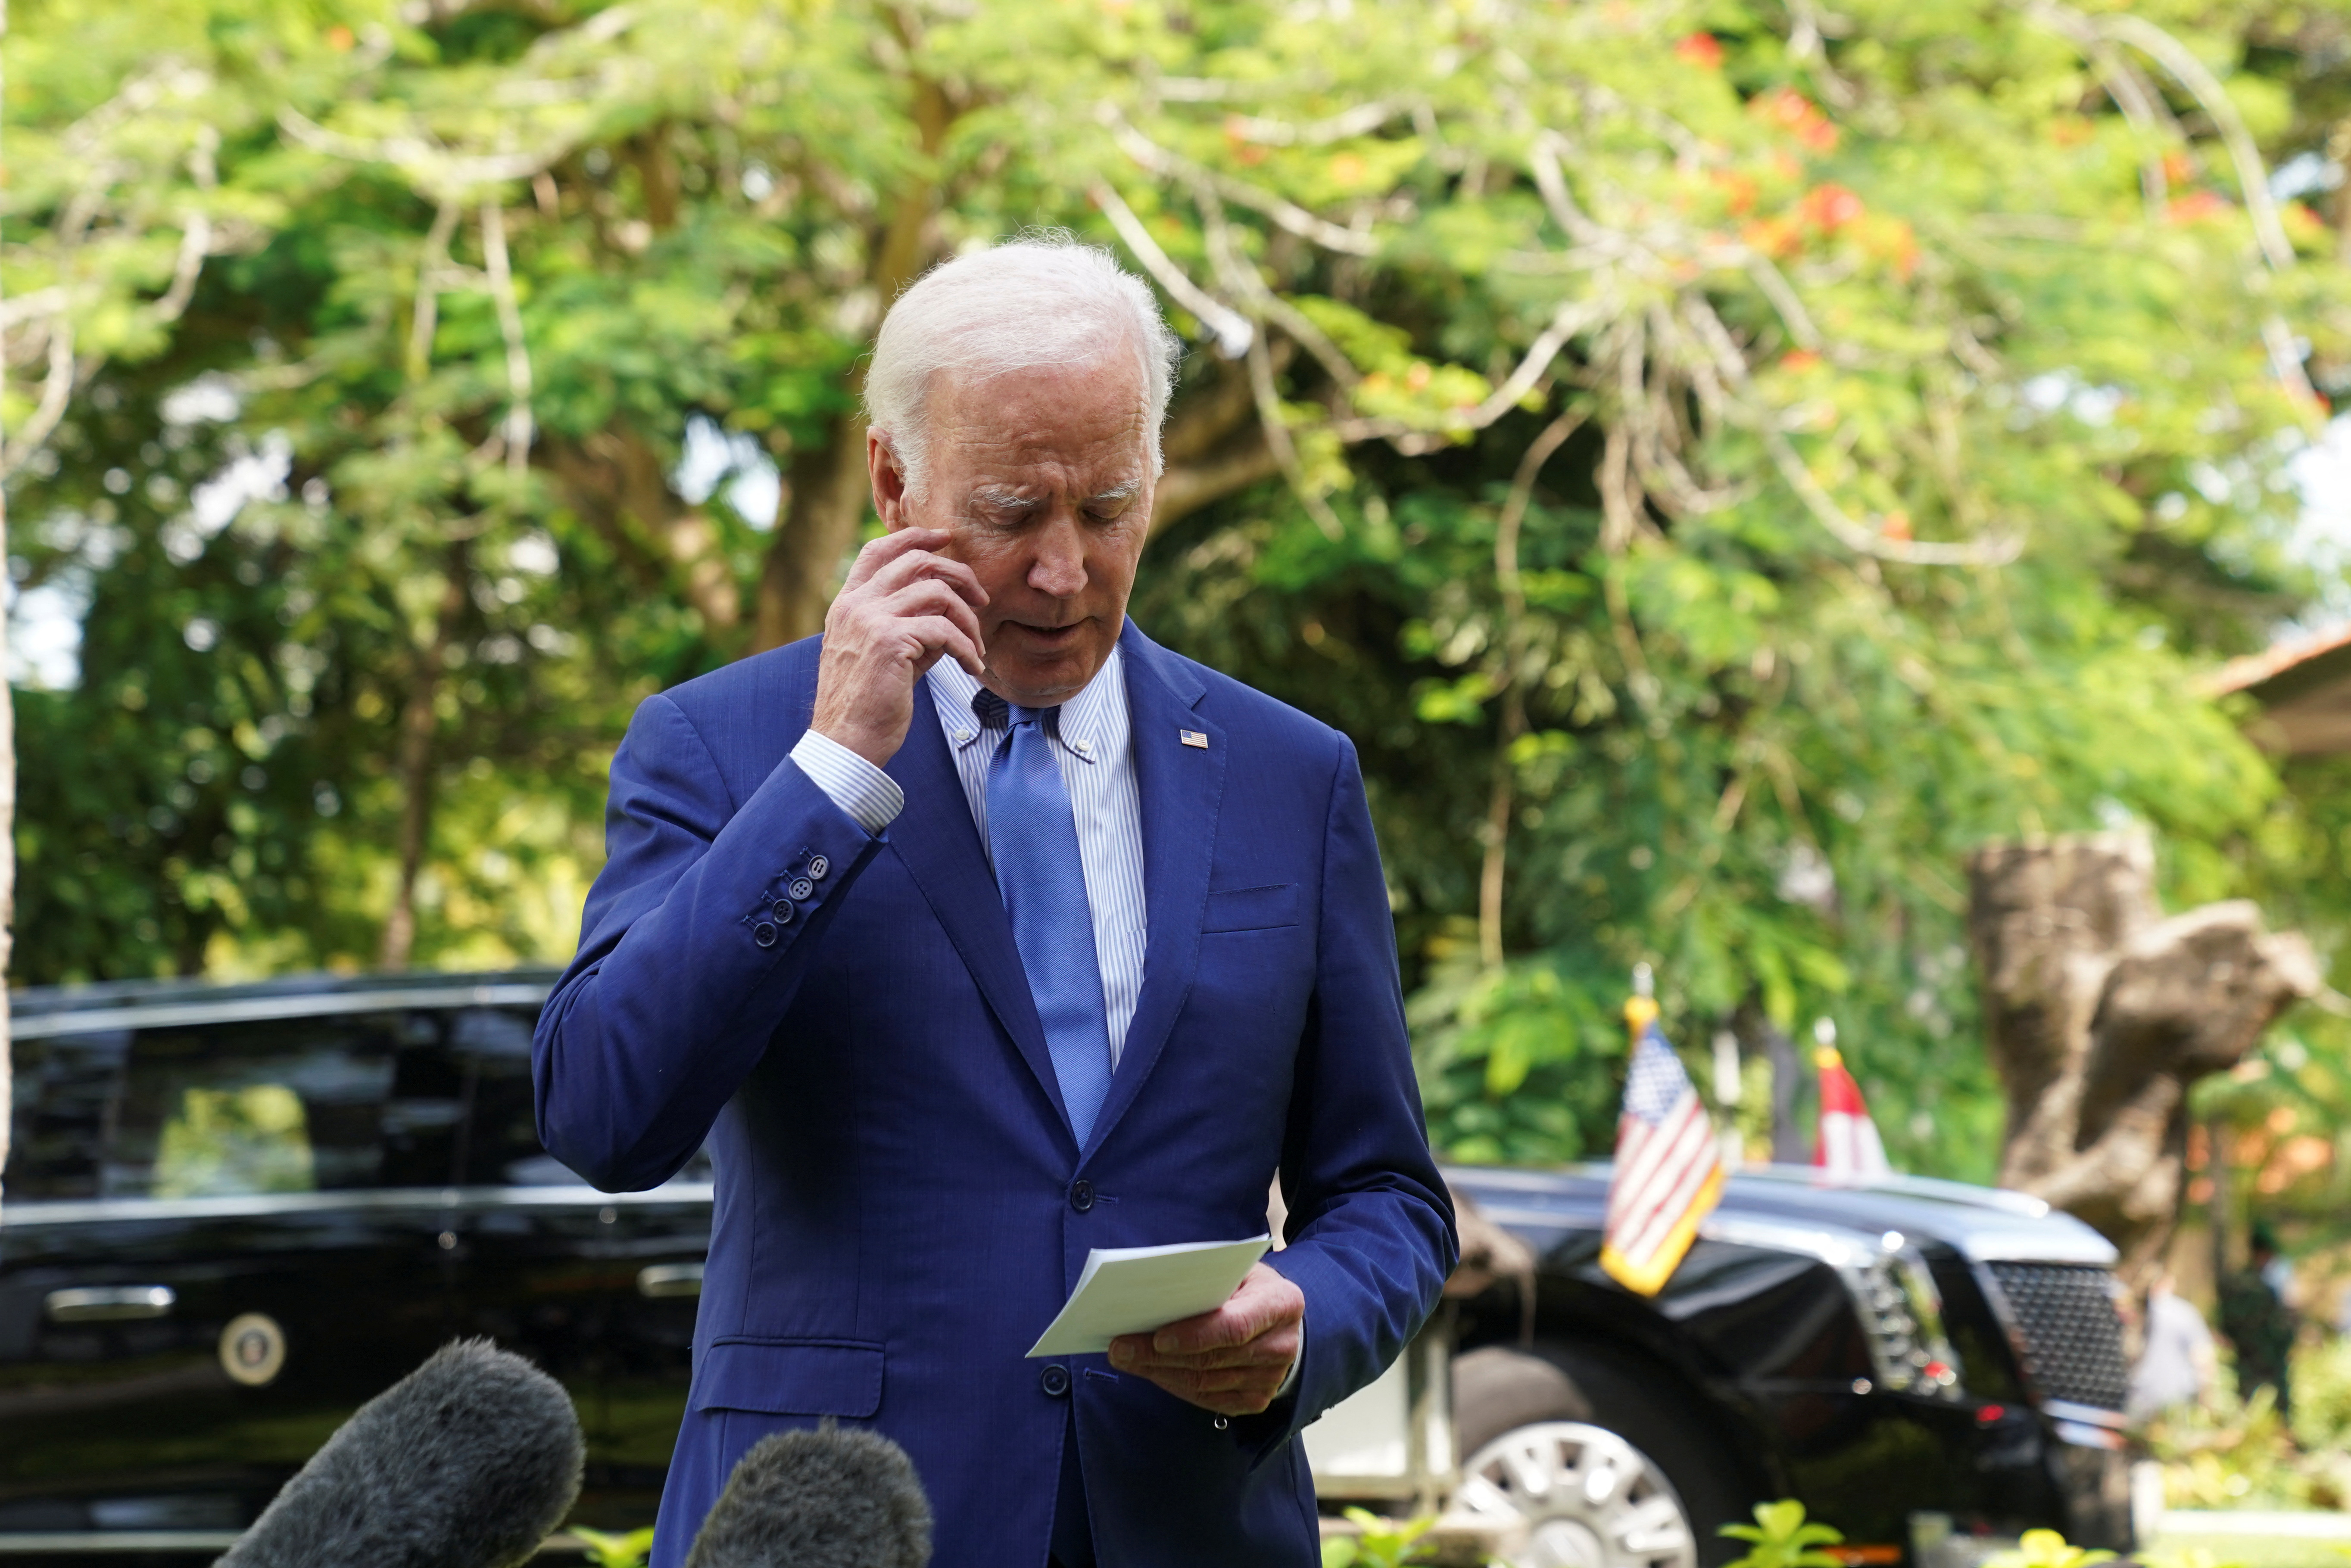 Biden speaks to the media in Bali